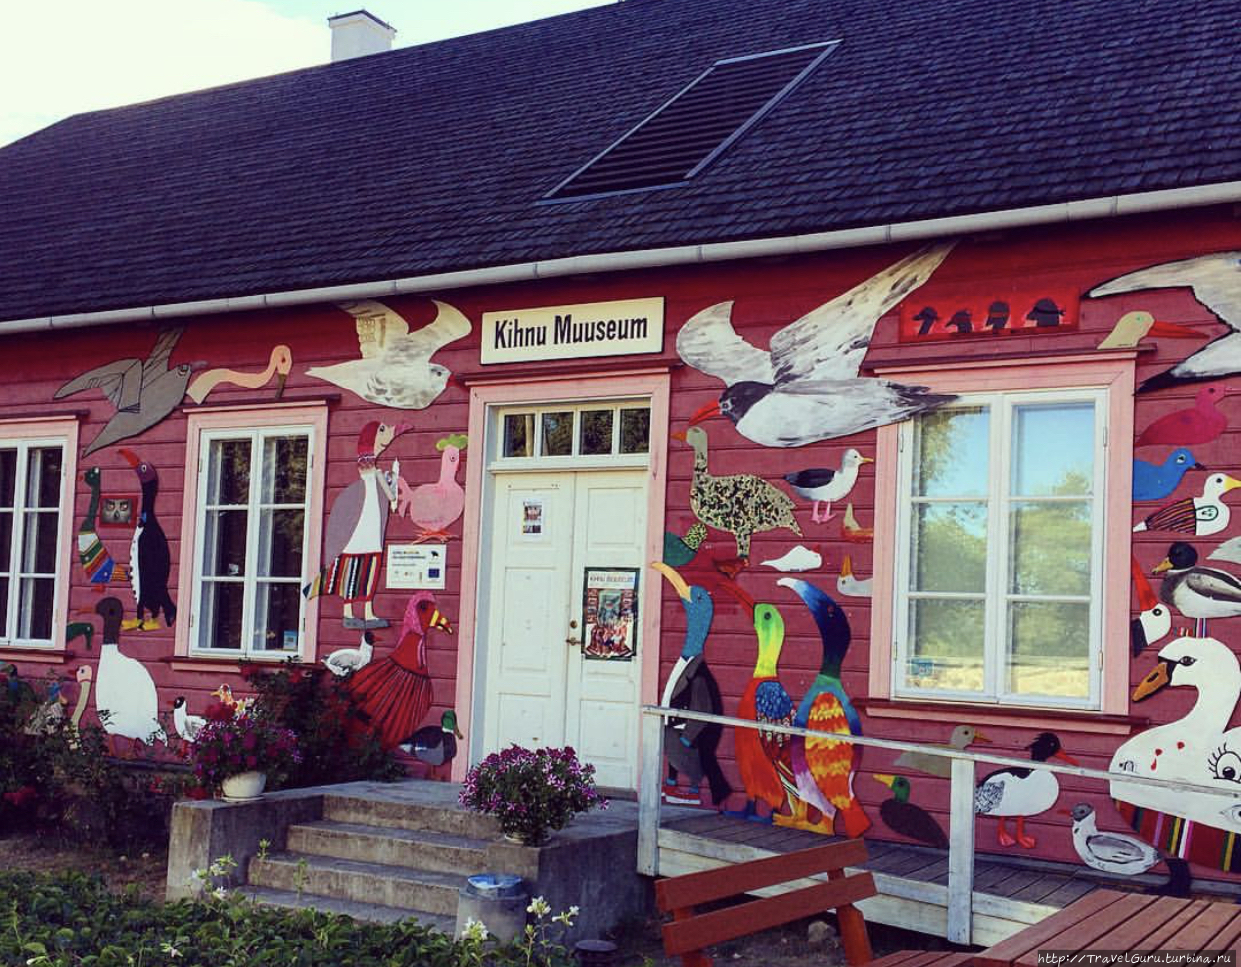 Музей острова Кихну. Один из нескольких туристических объектов на острове, внешне похожий на детский сад или школу Остров Кихну, Эстония